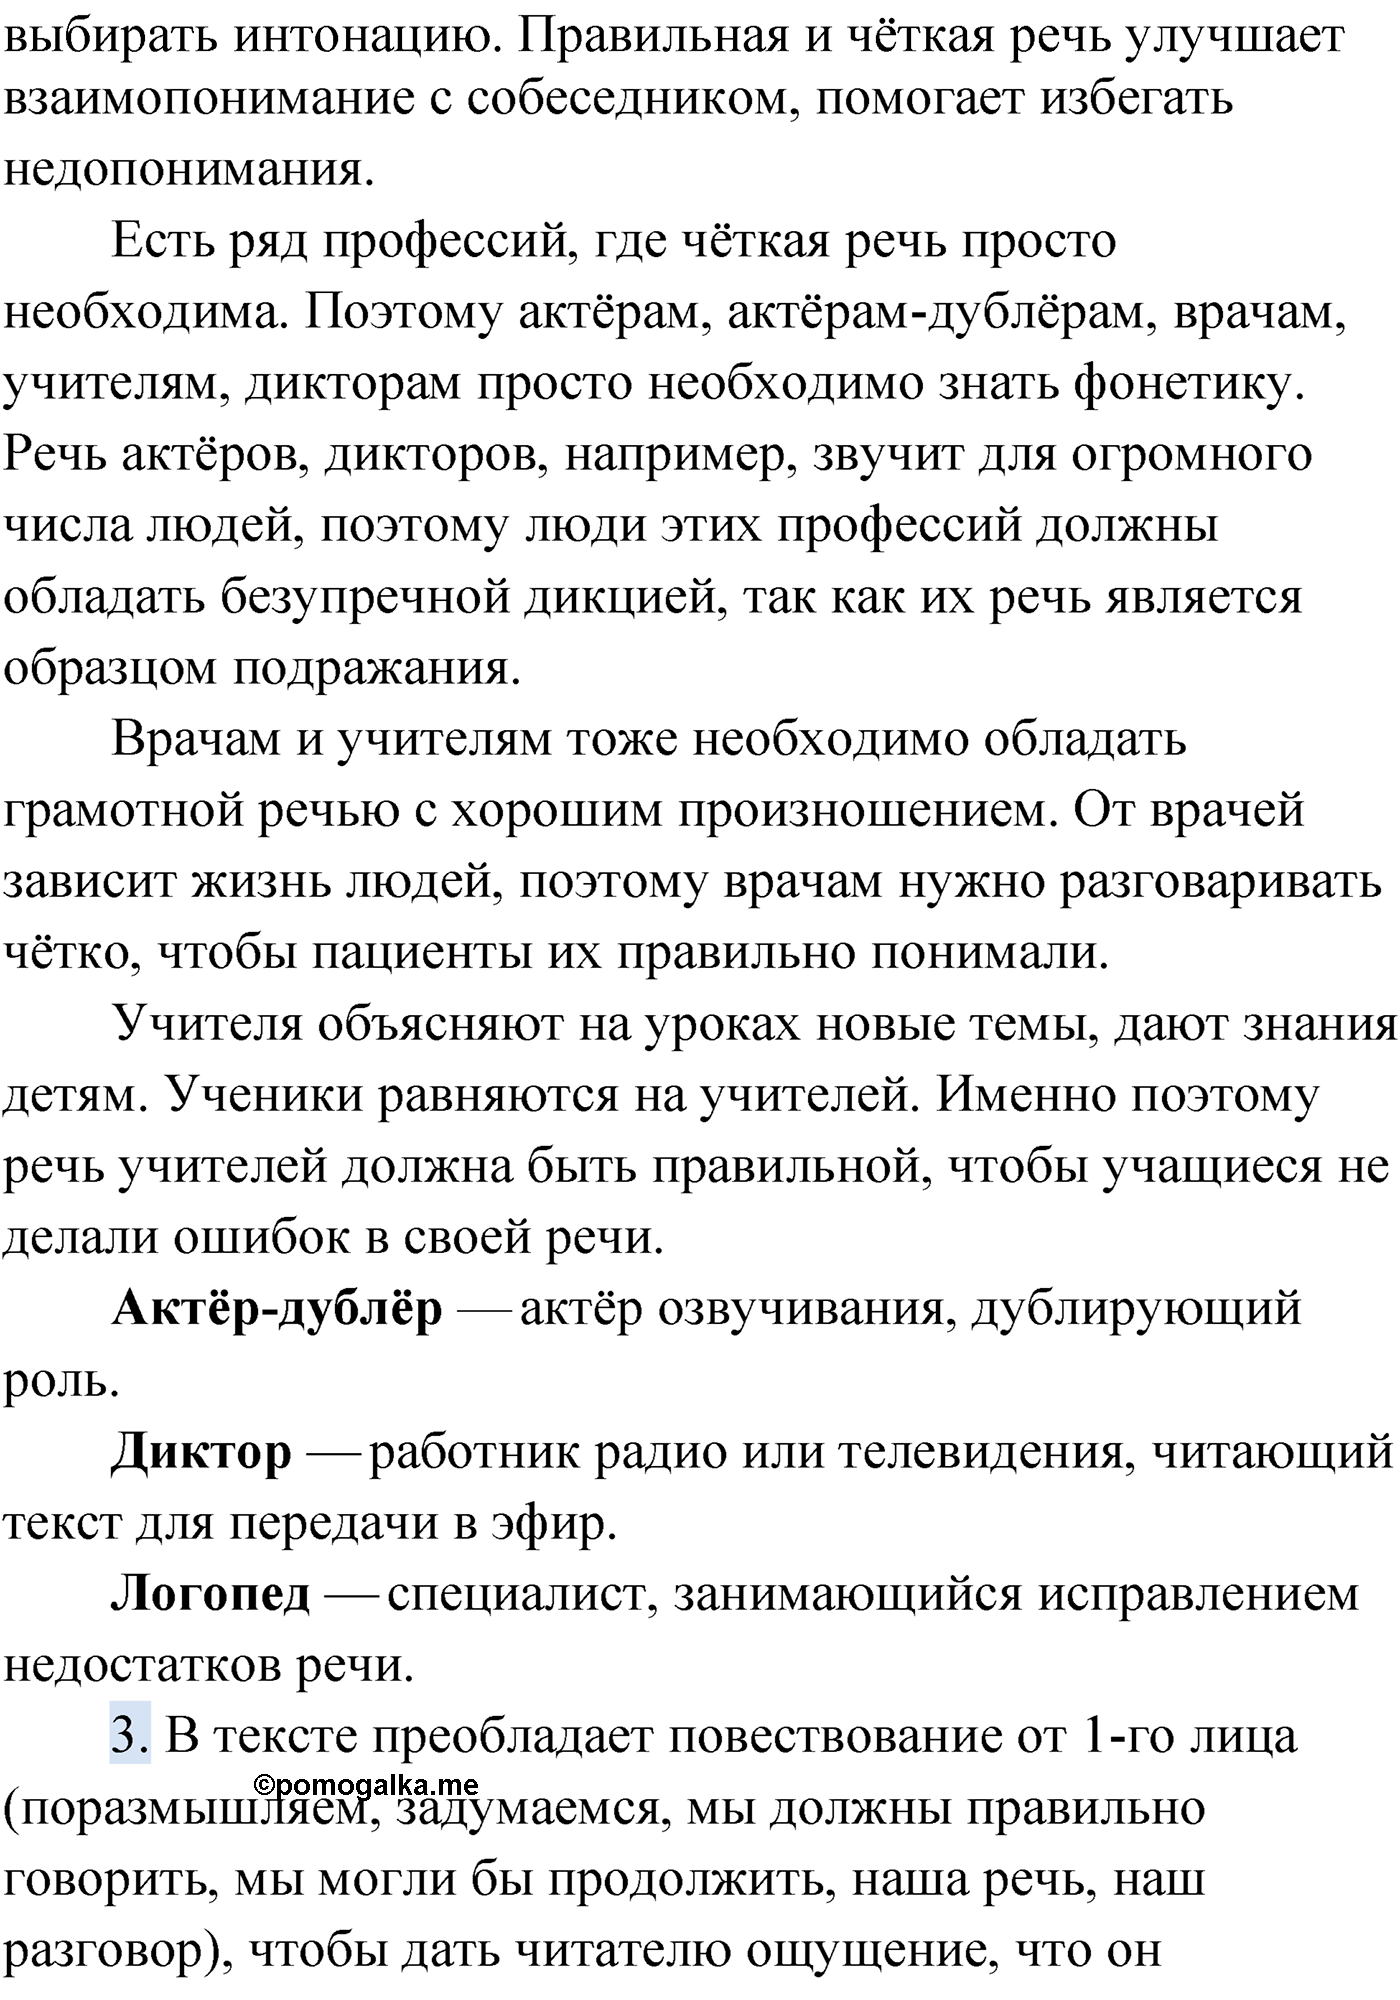 упражнение №197 русский язык 9 класс Мурина 2019 год